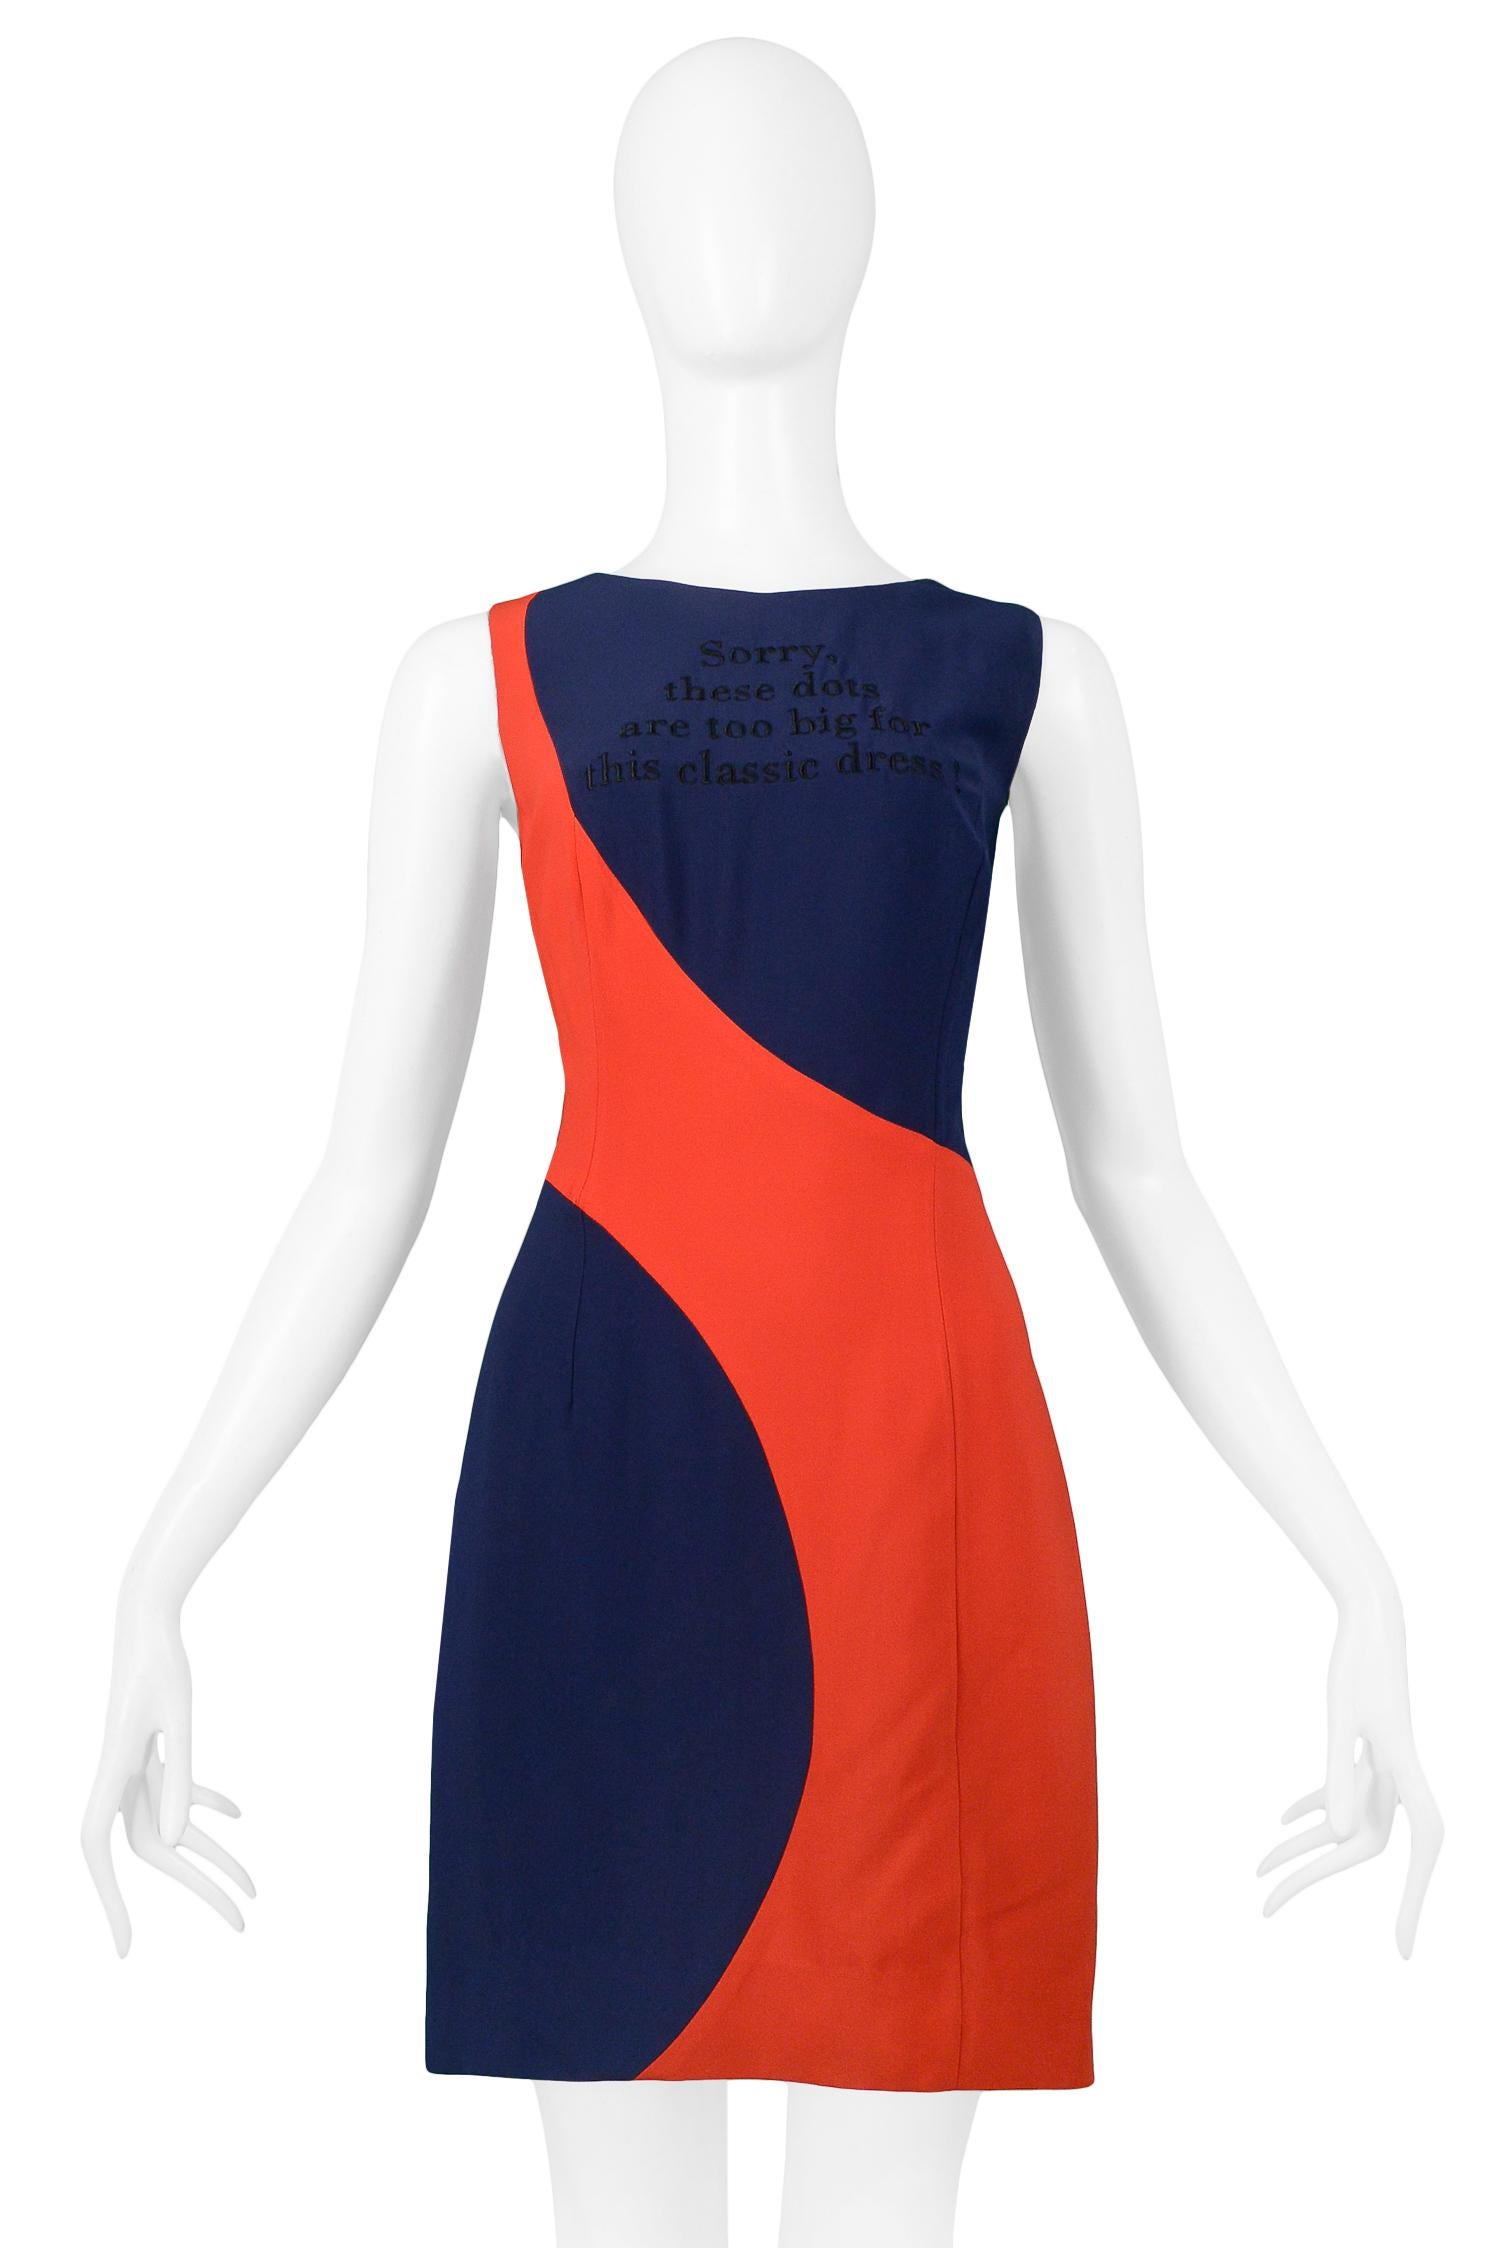 Moschino Couture - Robe vintage à gros pois rouge et bleu marine Pour femmes en vente